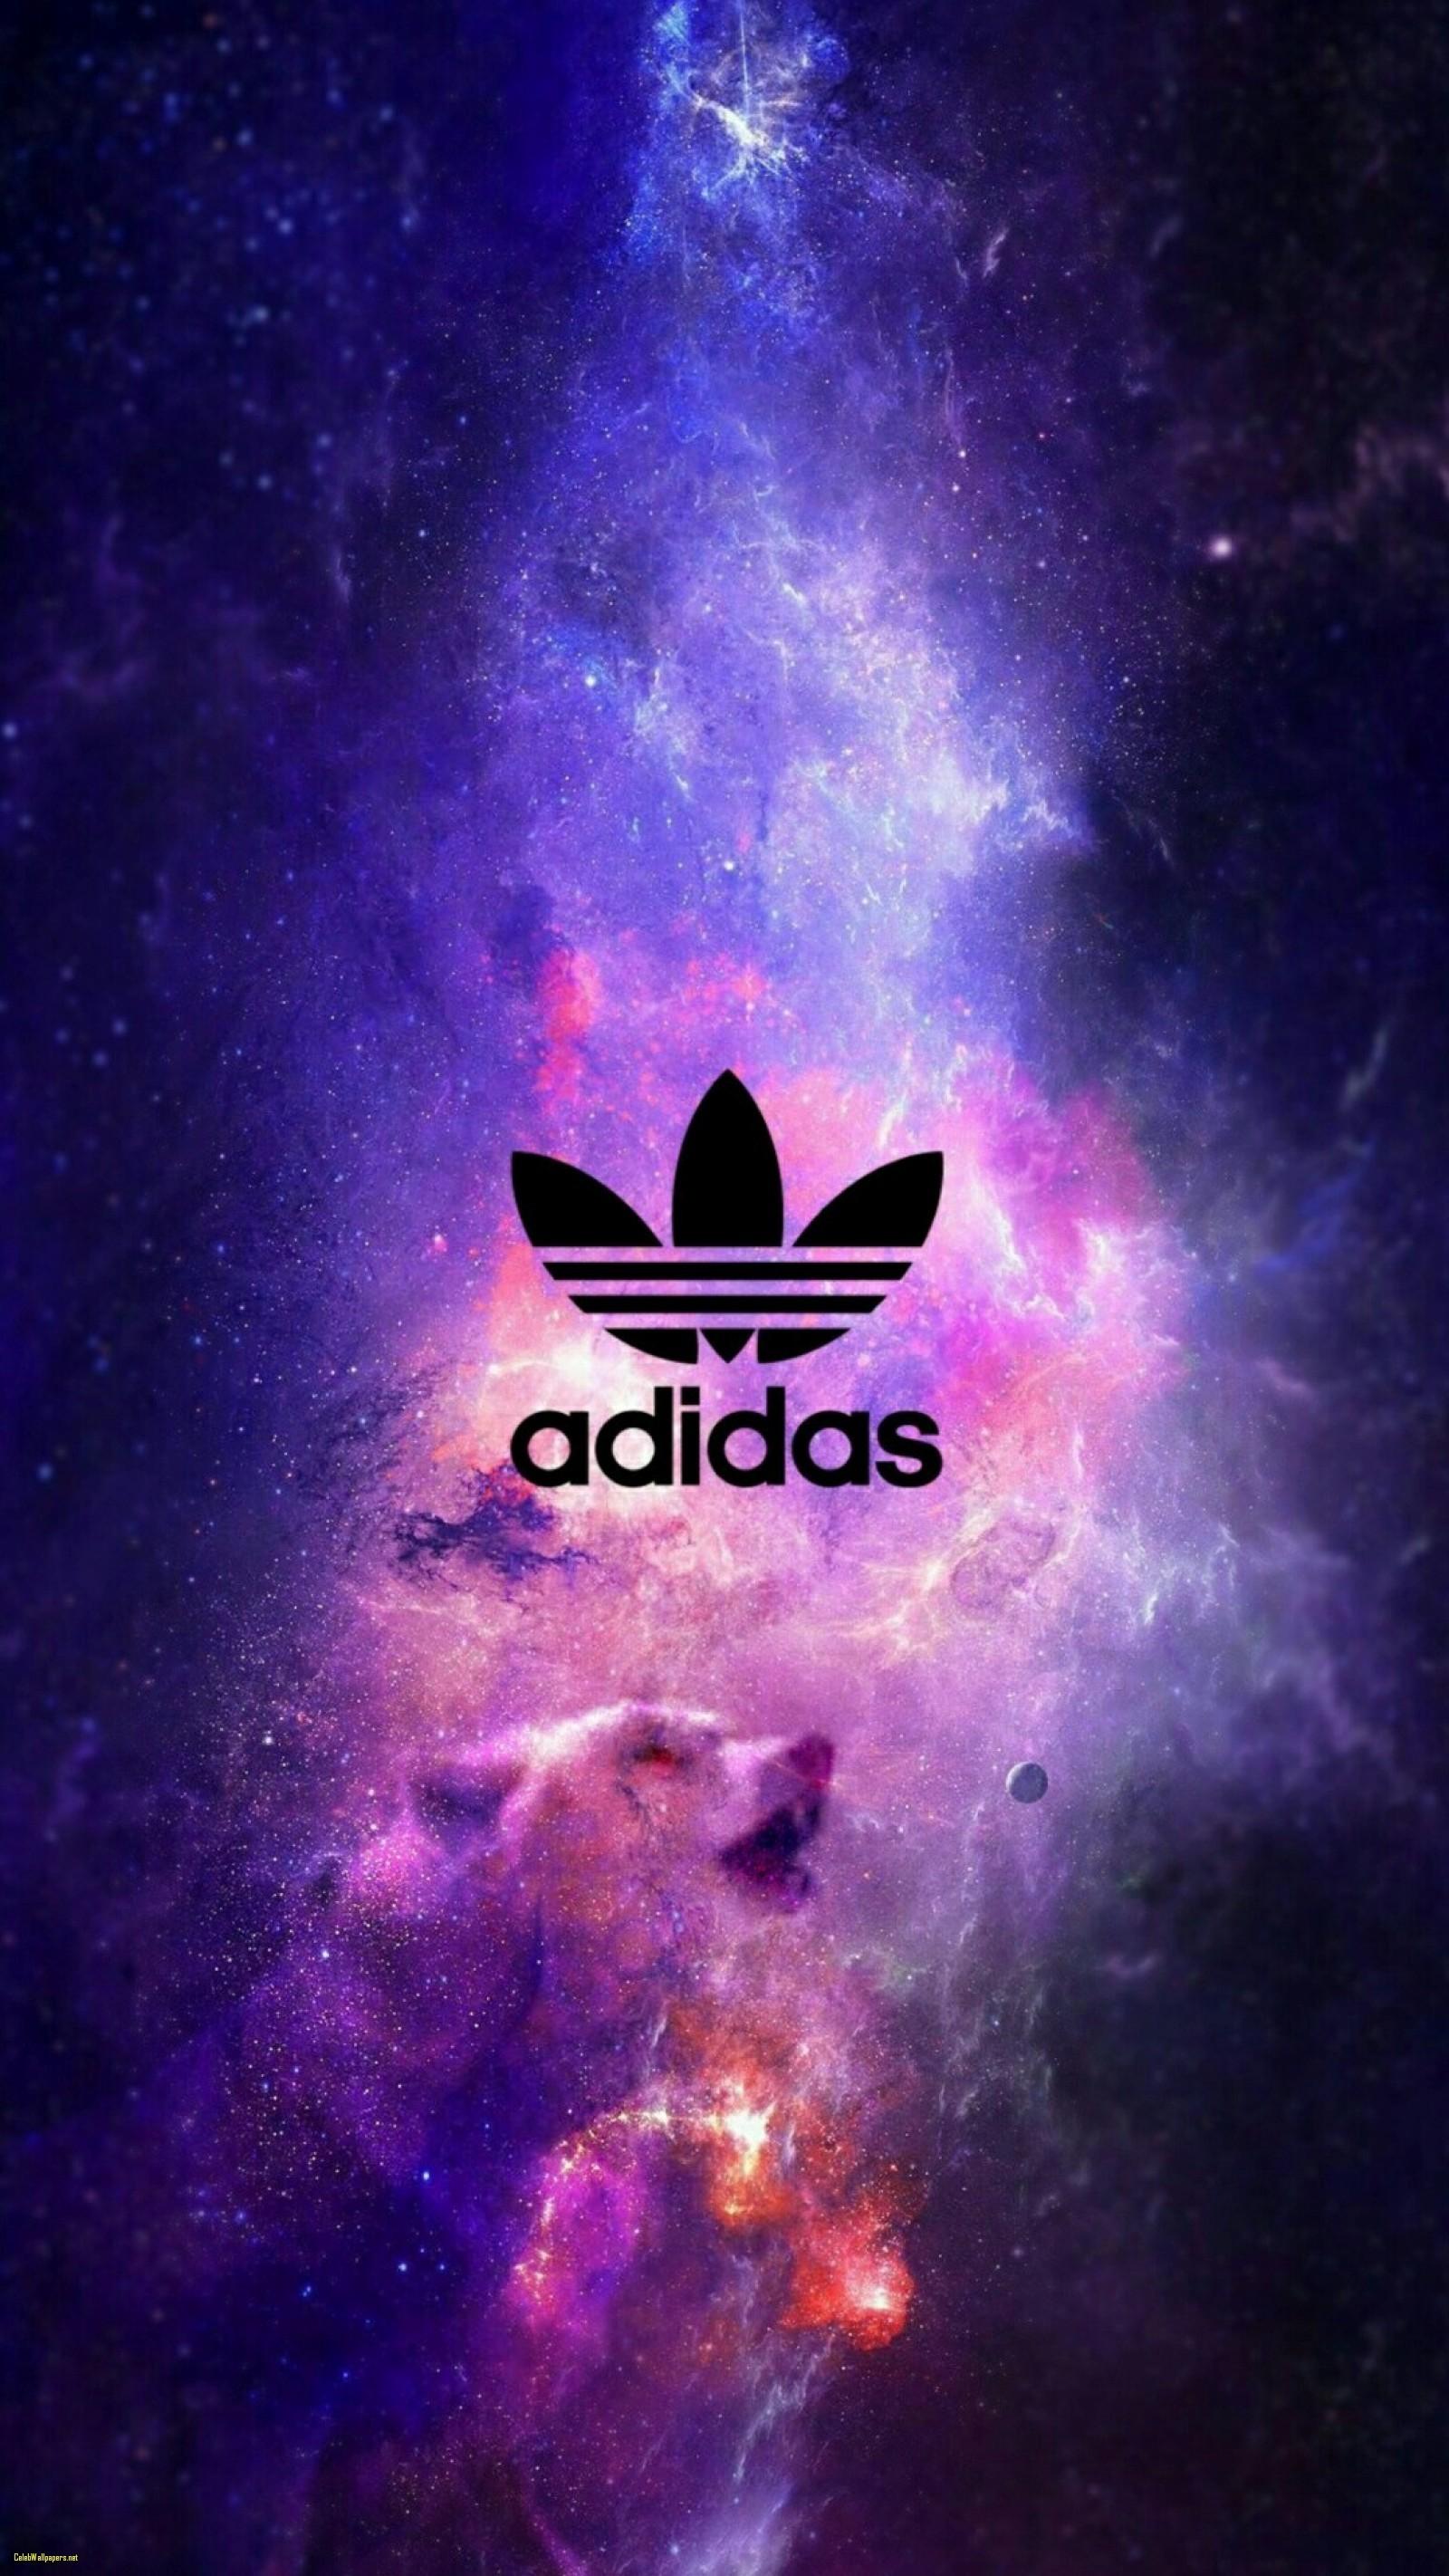 Adidas Wallpapers - Top Những Hình Ảnh Đẹp